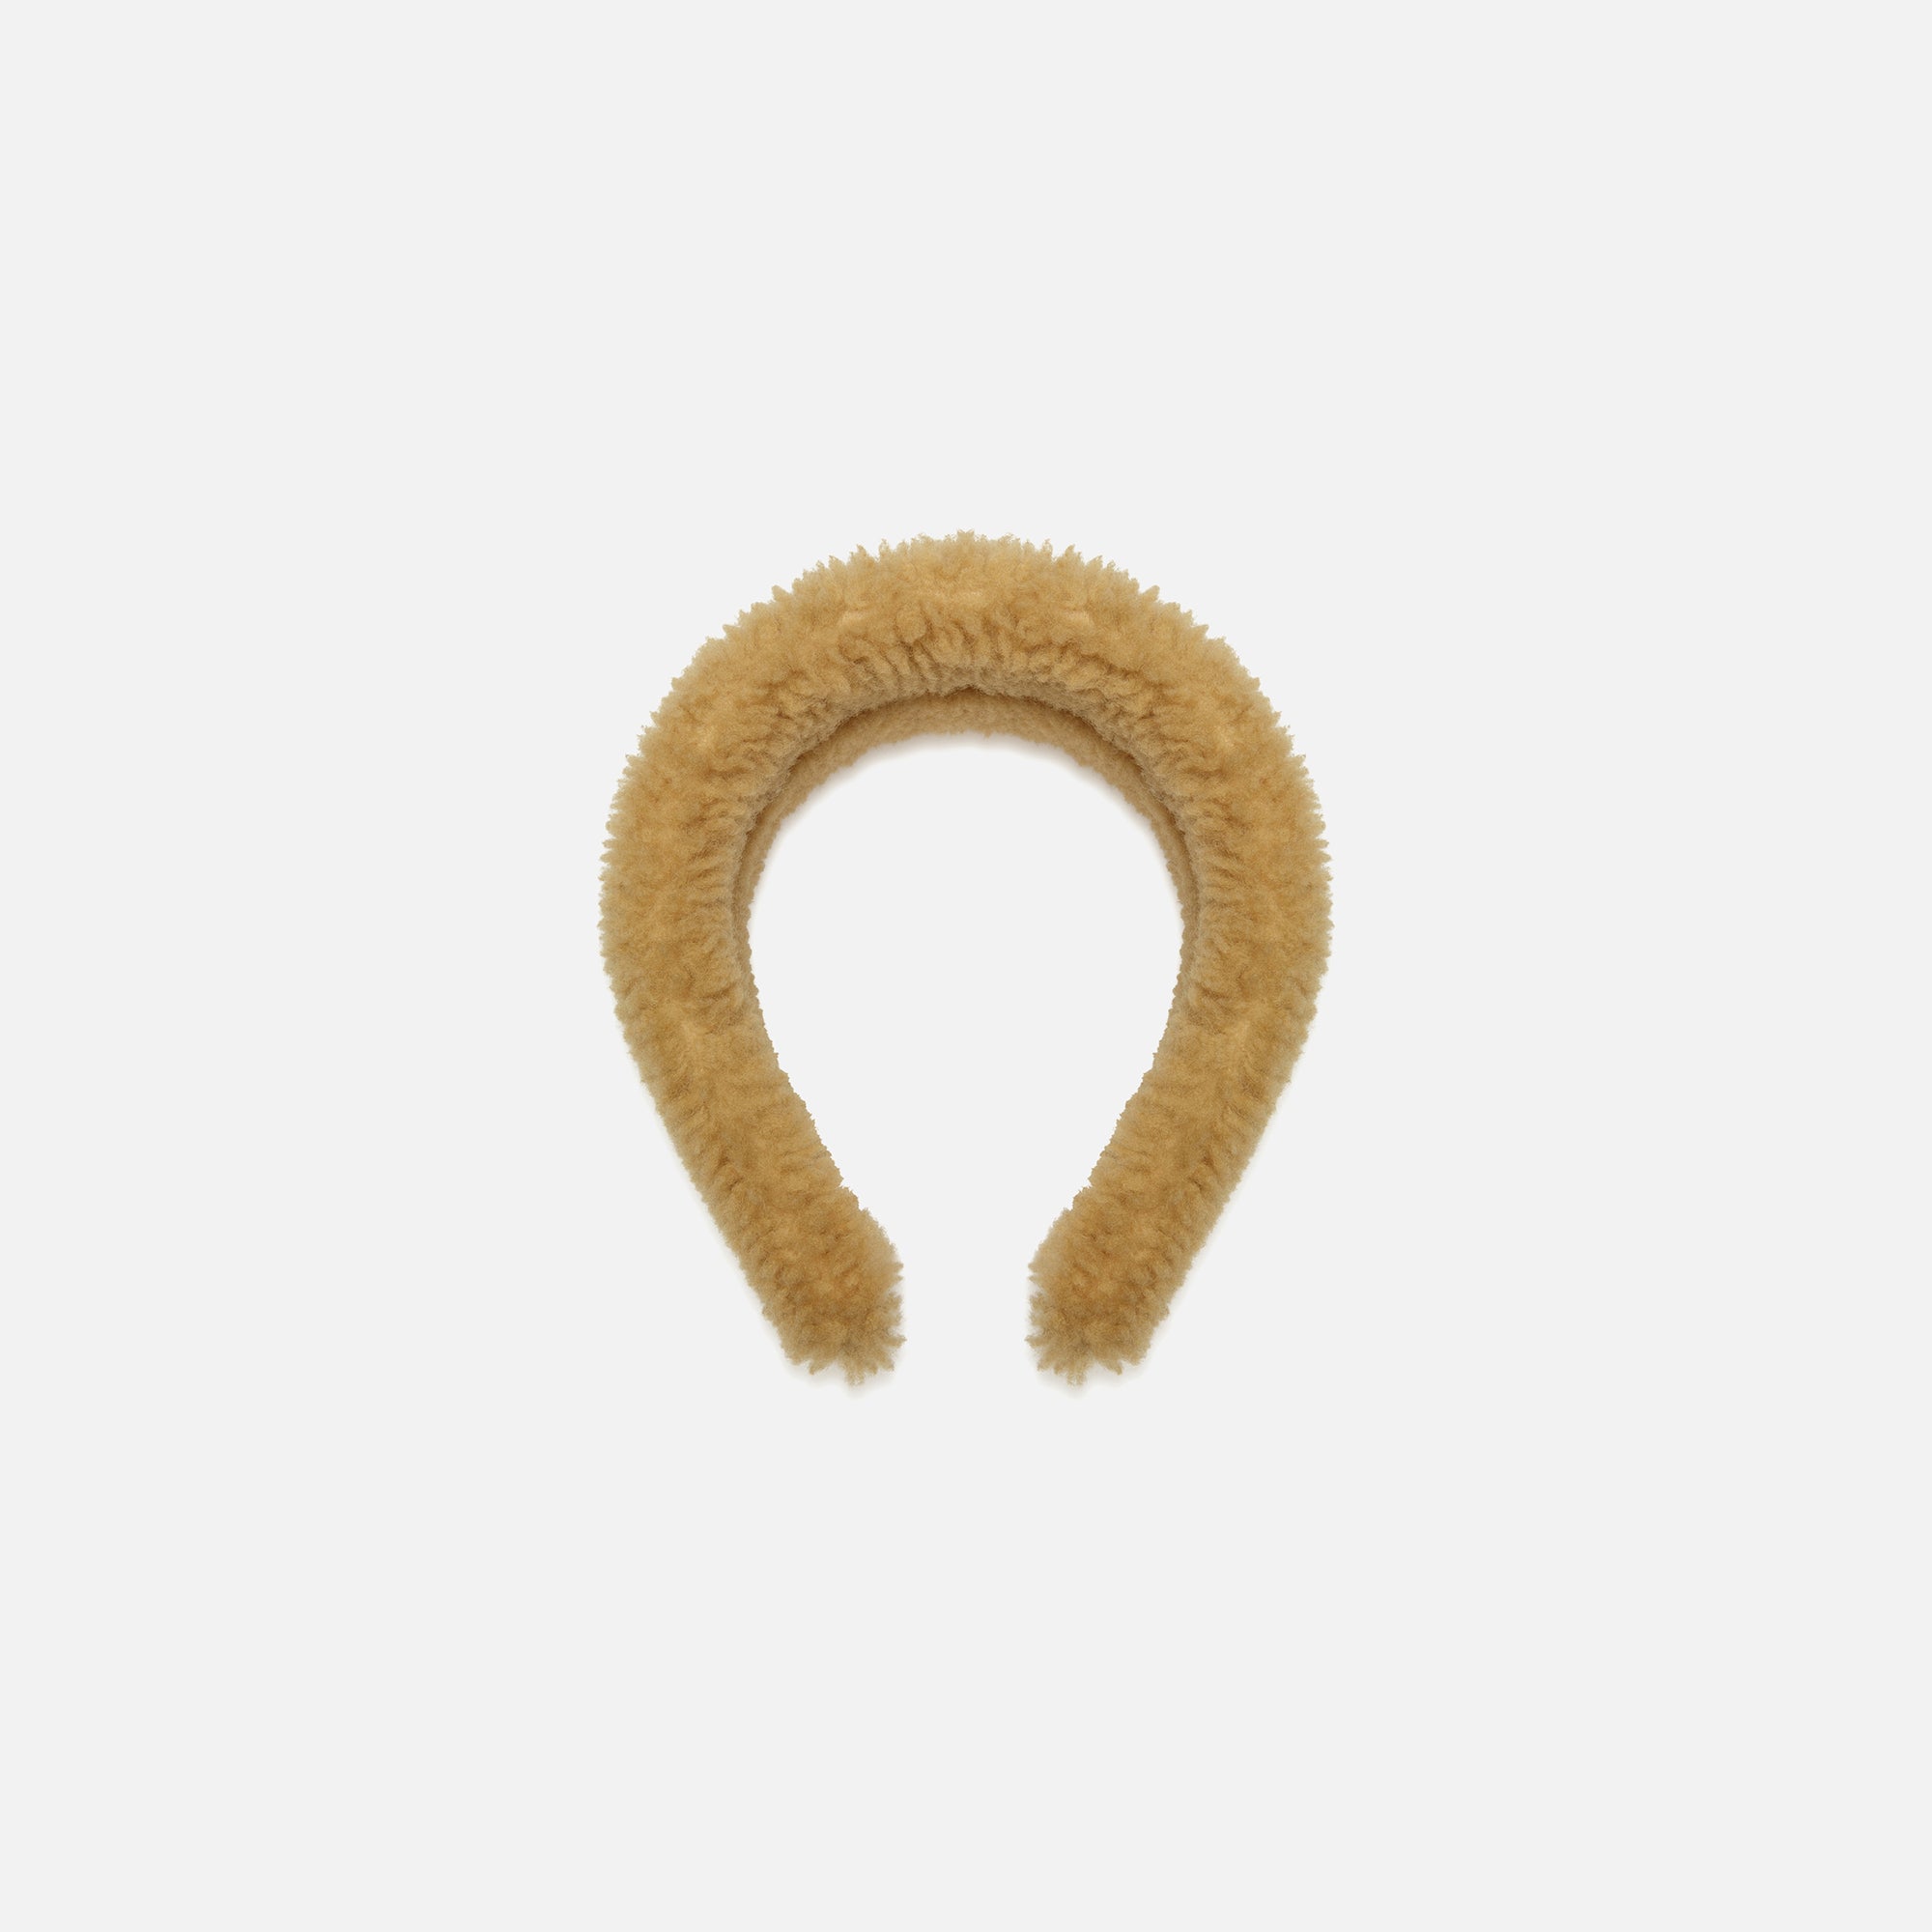 Bally St. Moritz Headband - Camel